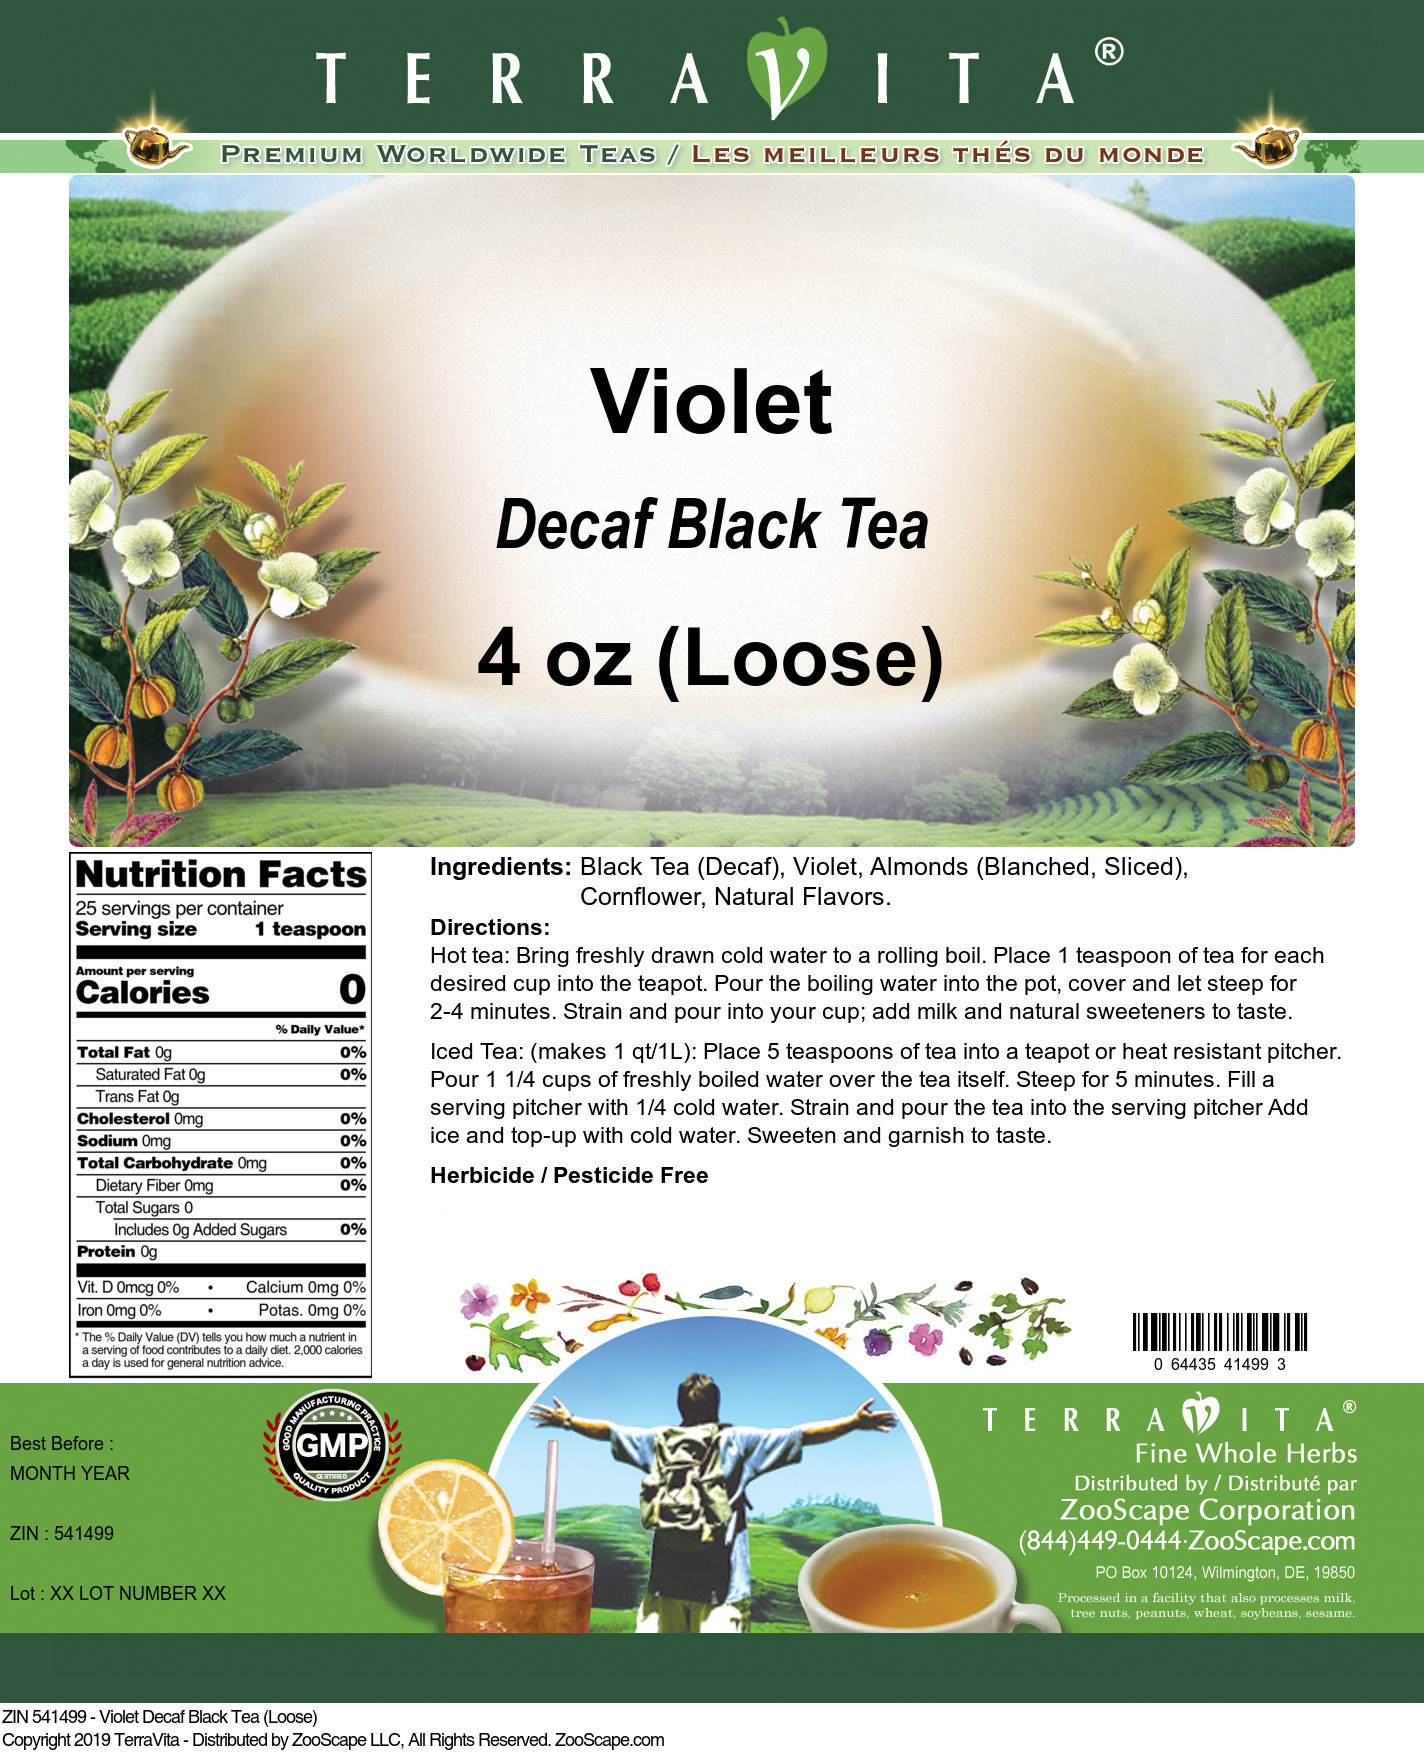 Violet Decaf Black Tea (Loose) - Label